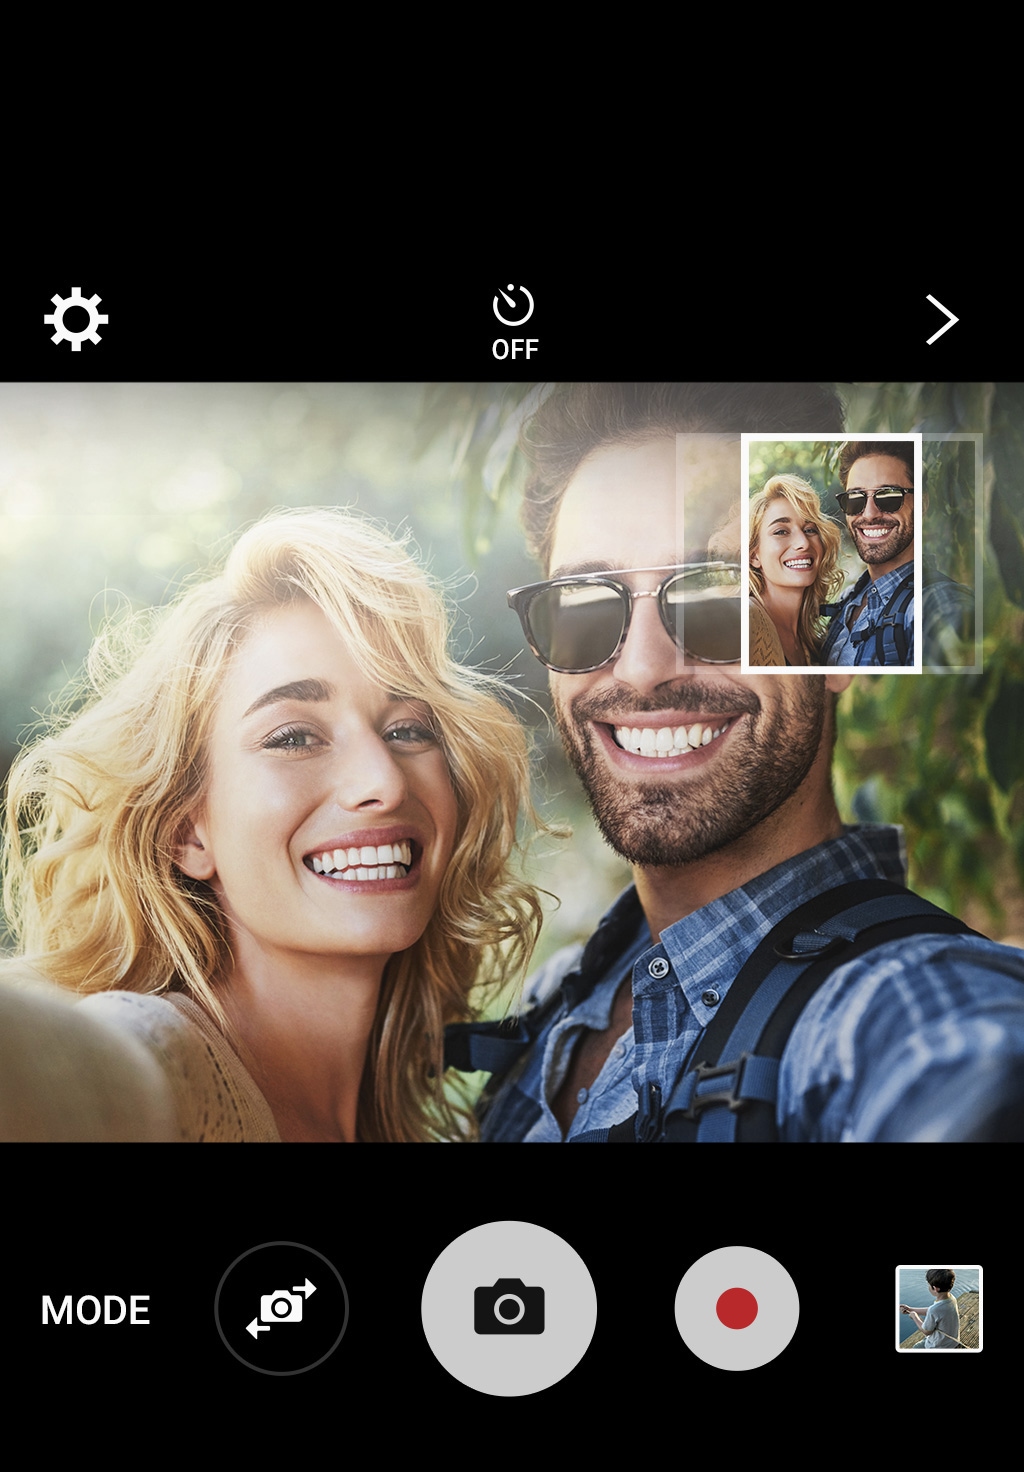 Với Samsung Galaxy J7 Prime, bạn có thể chỉnh sửa video một cách chuyên nghiệp, tạo ra những tác phẩm đẹp mắt và ấn tượng.